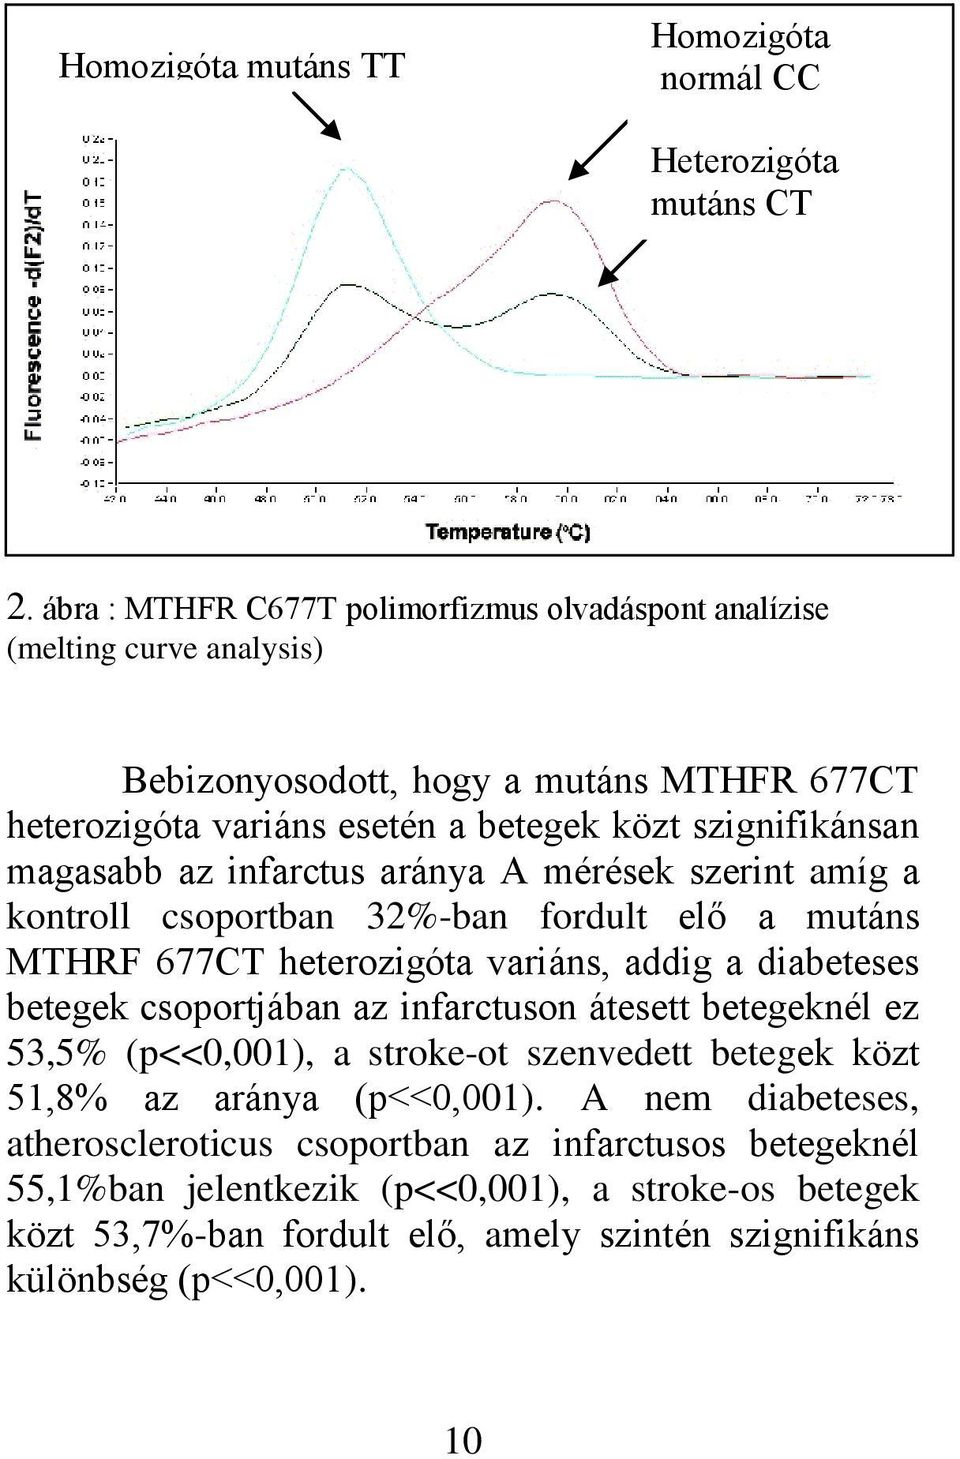 magasabb az infarctus aránya A mérések szerint amíg a kontroll csoportban 32%-ban fordult elő a mutáns MTHRF 677CT heterozigóta variáns, addig a diabeteses betegek csoportjában az